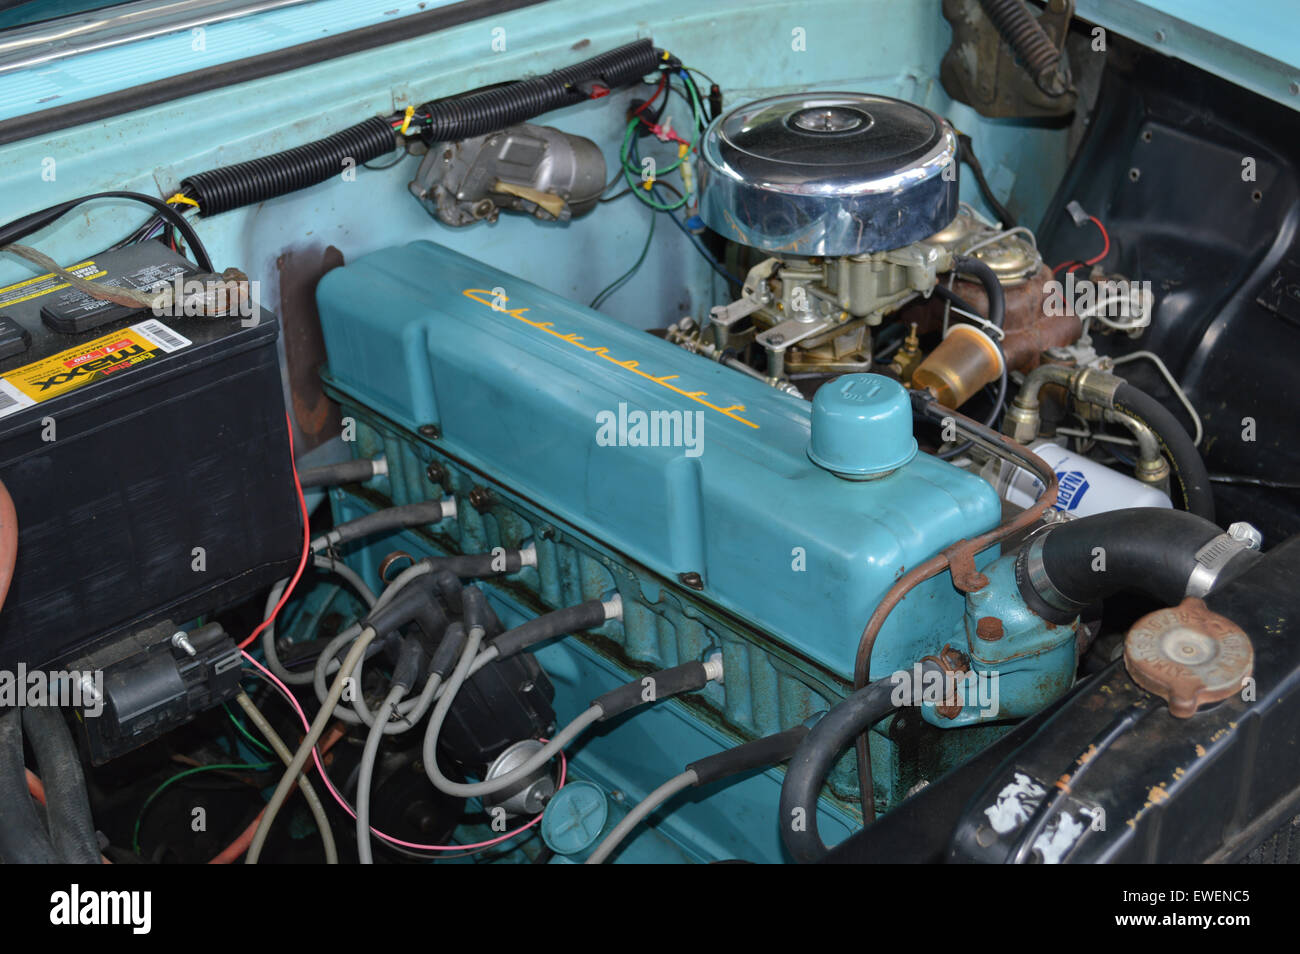 La Chevrolet inline motore a sei cilindri comunemente chiamato stovebolt sei. Foto Stock